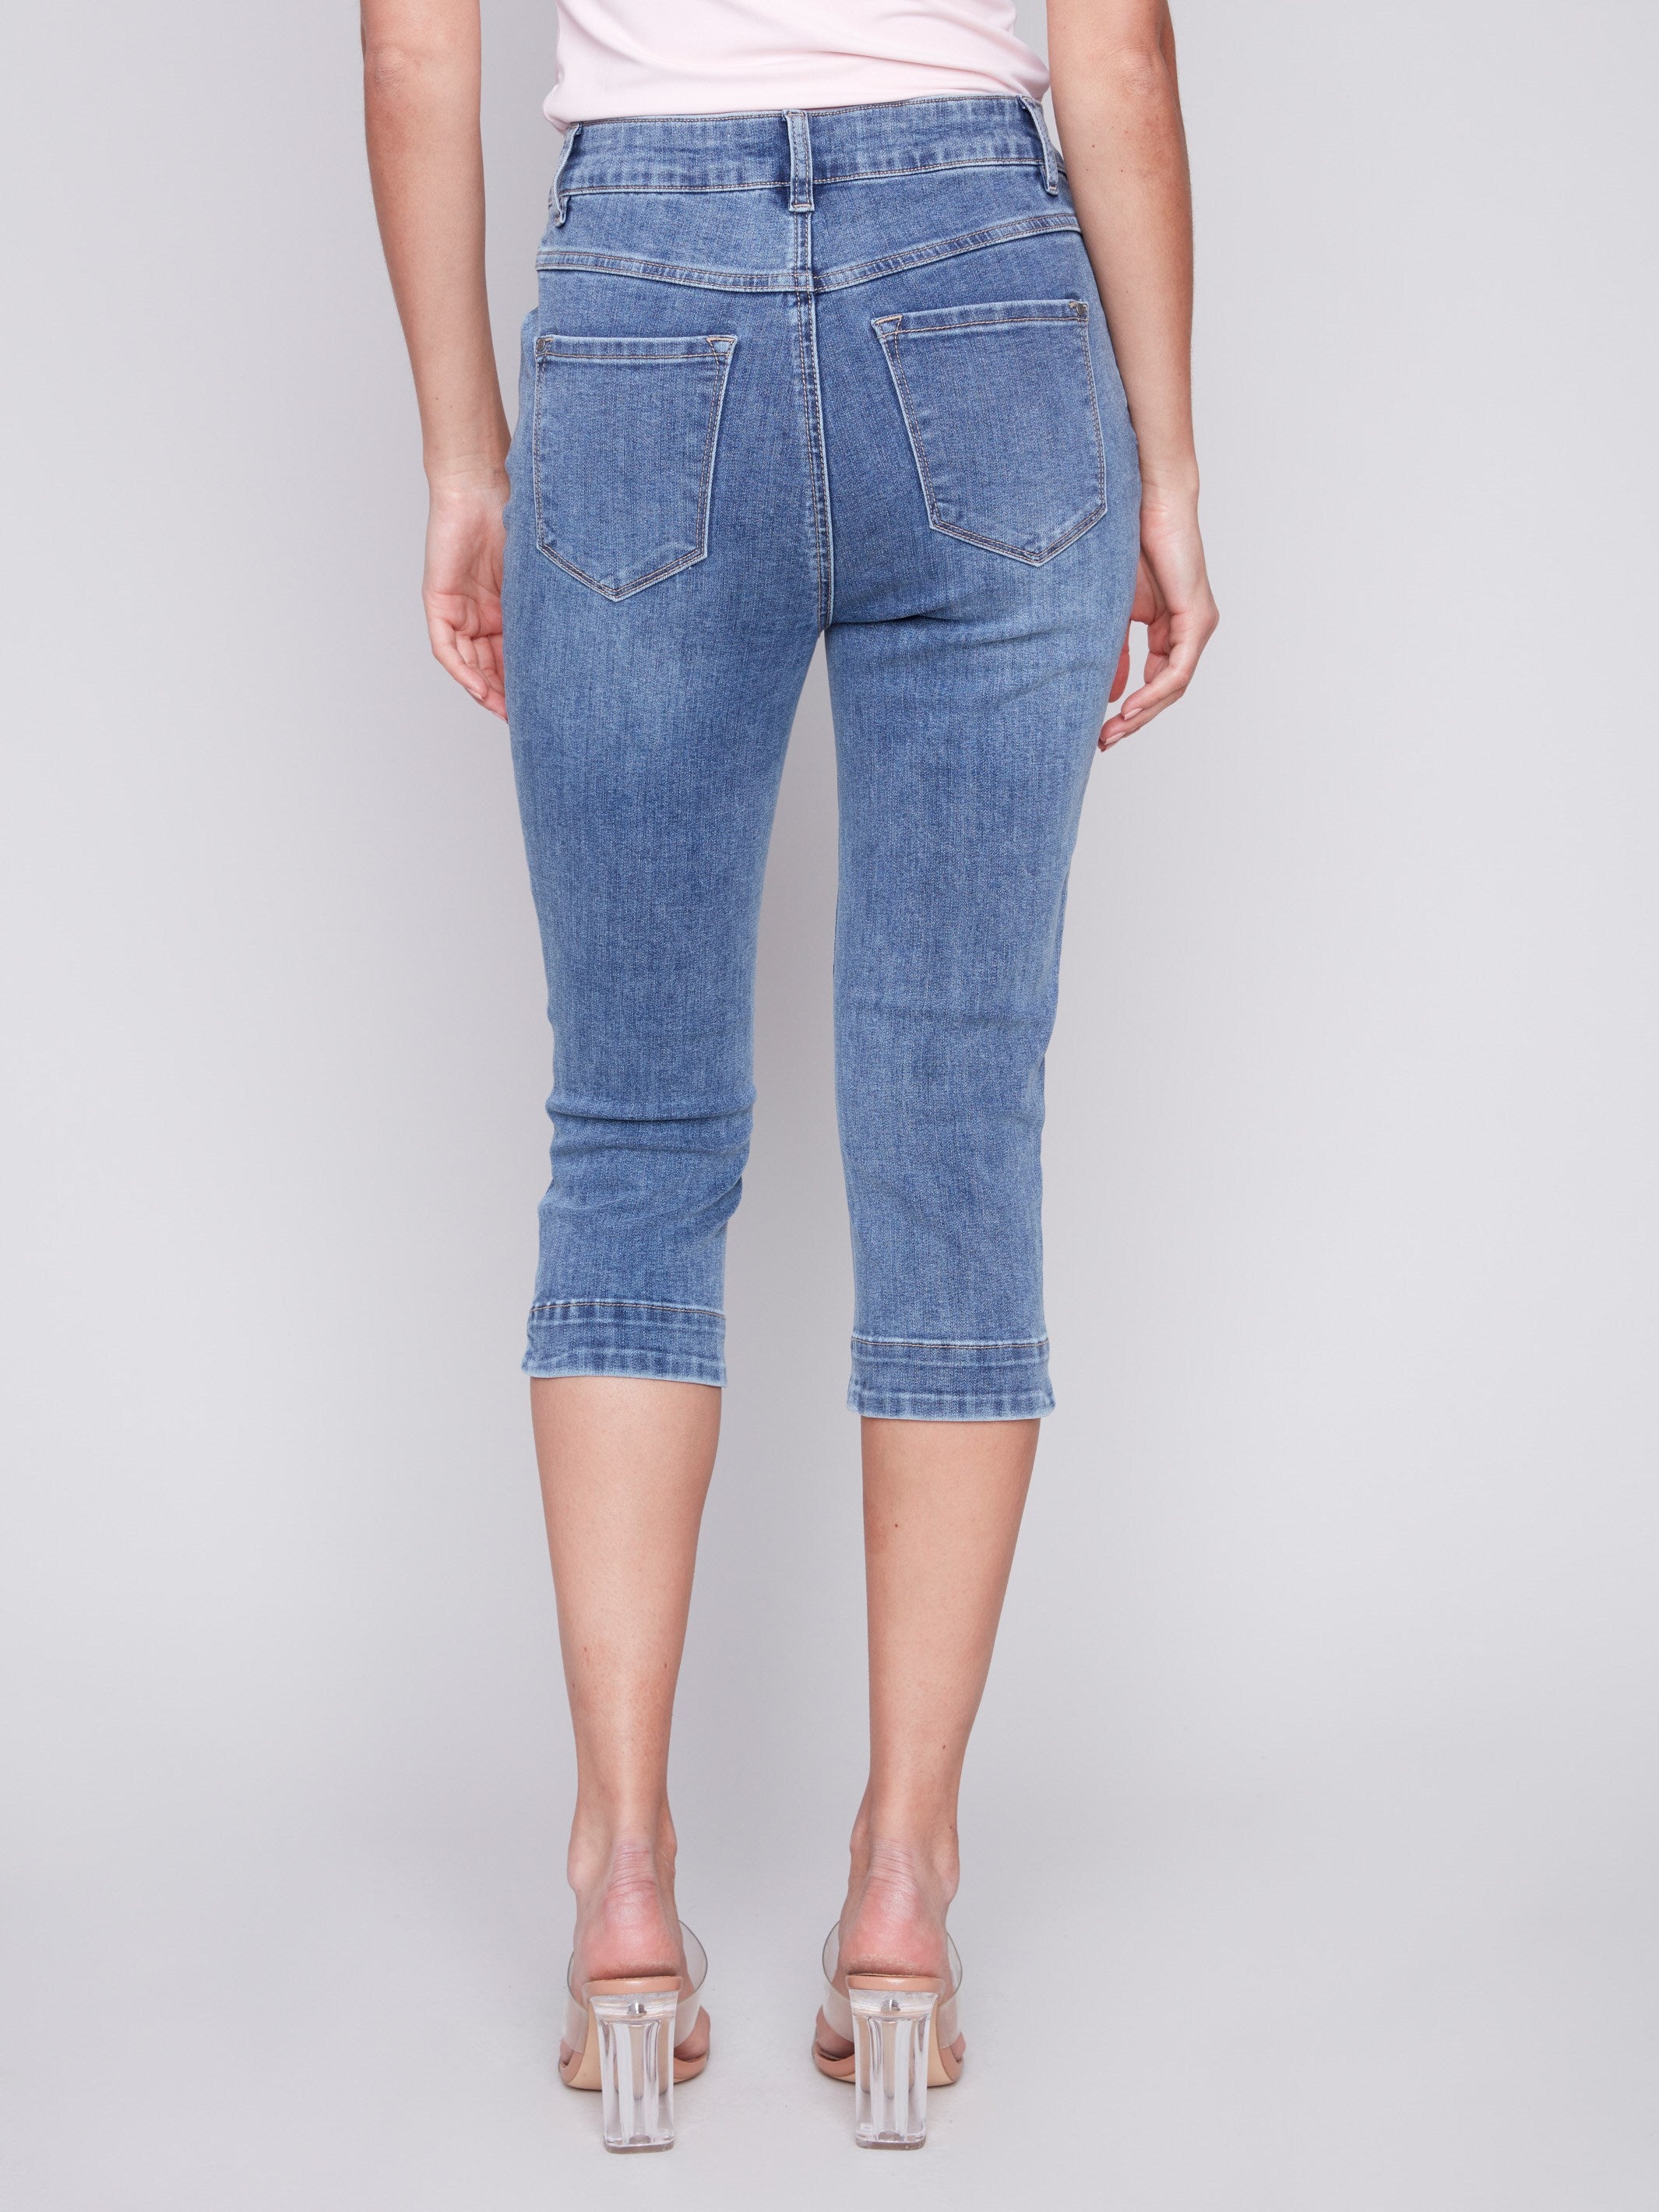 Charlie B Knee High Capri Jeans - Medium Blue - Image 3